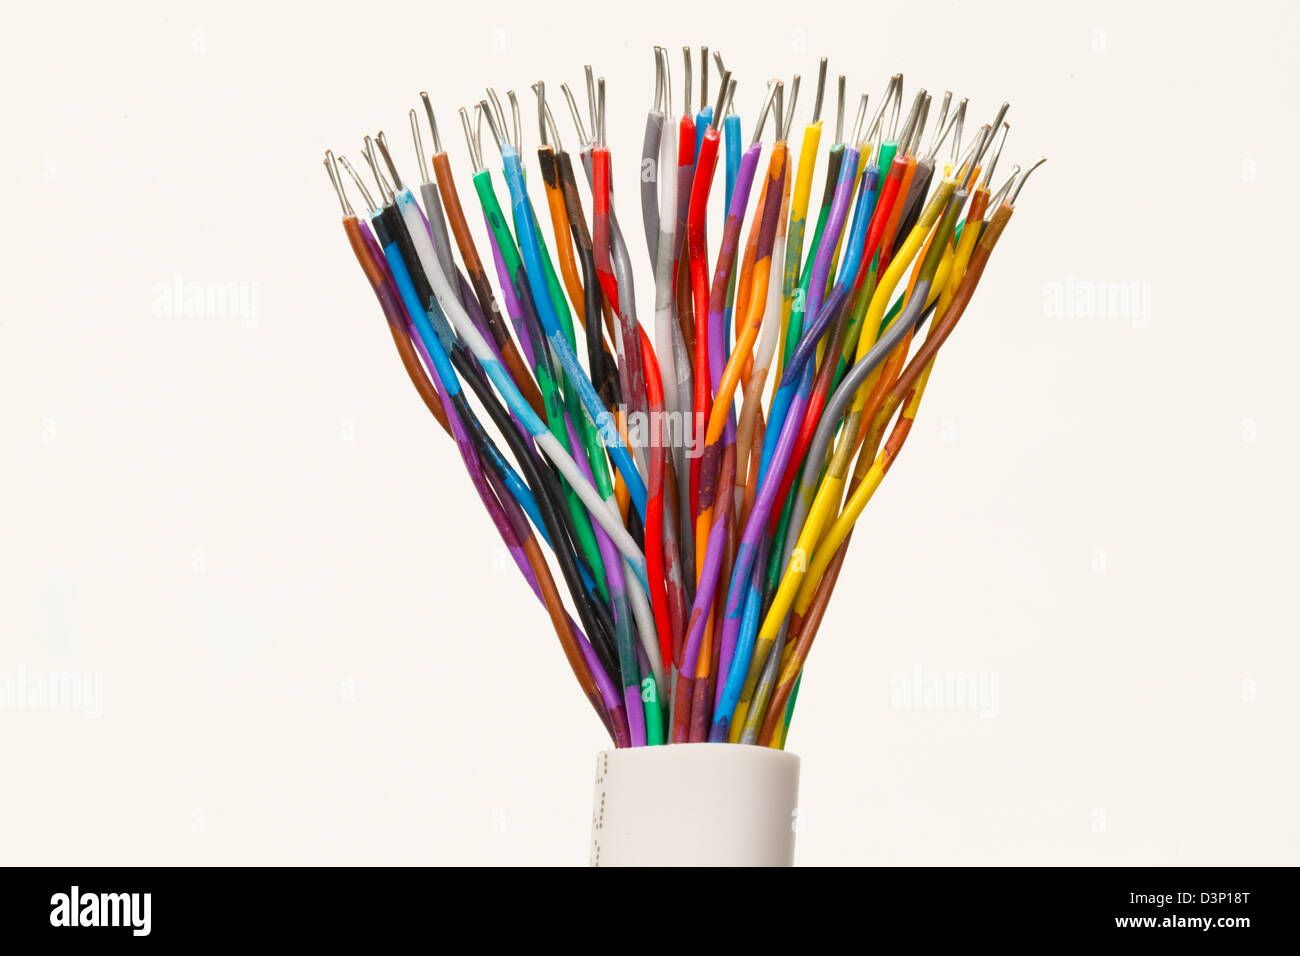 Cables-Multi-diversità di colore arcobaleno di colori misti Foto Stock